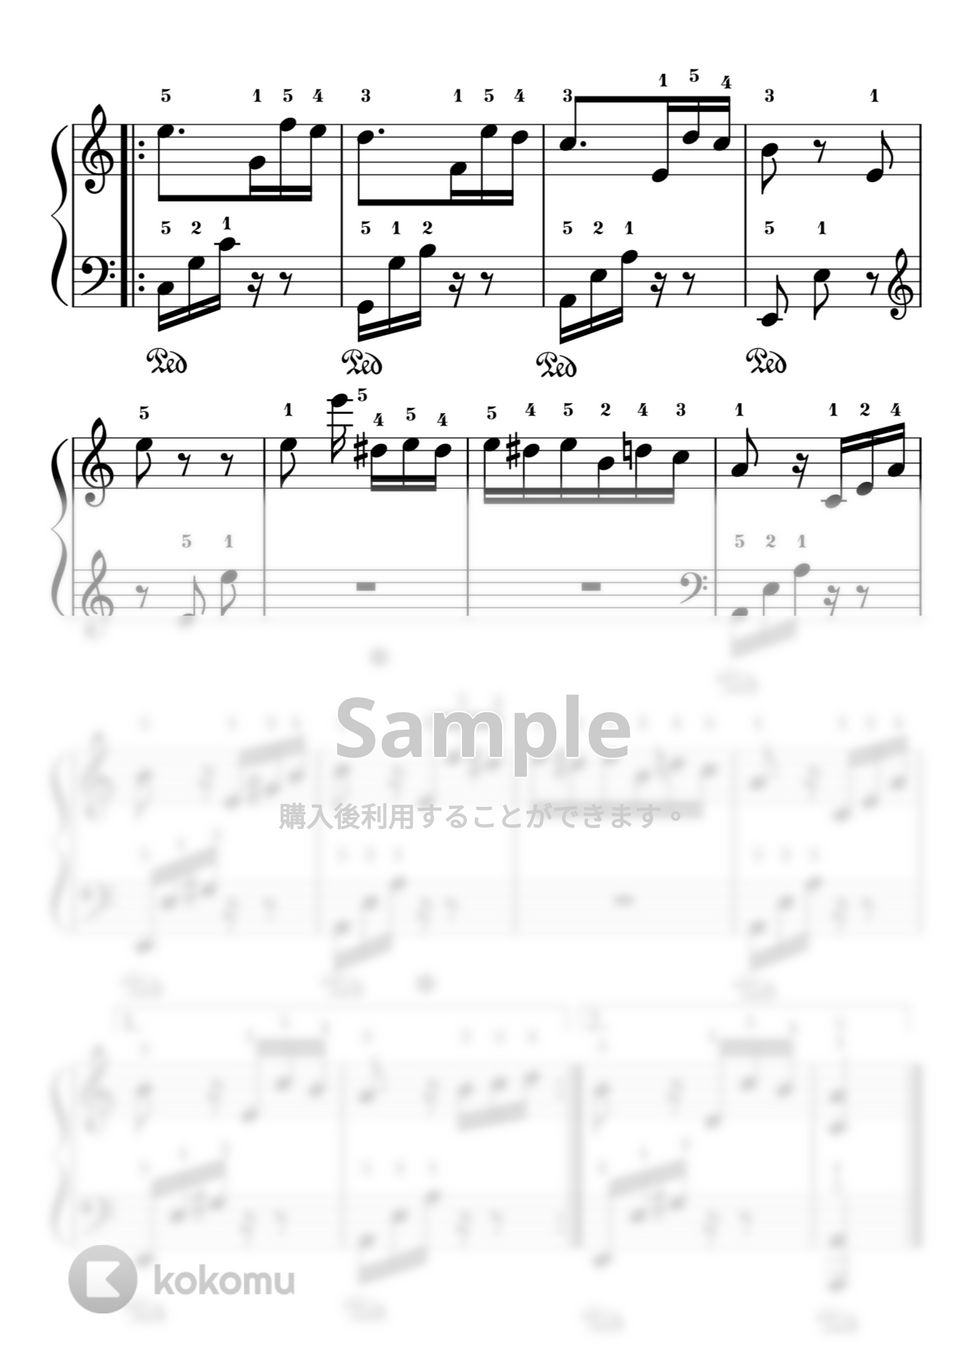 ベートーヴェン - 【初級】エリーゼのために (ピアノ初級) by ピアノのせんせいの楽譜集